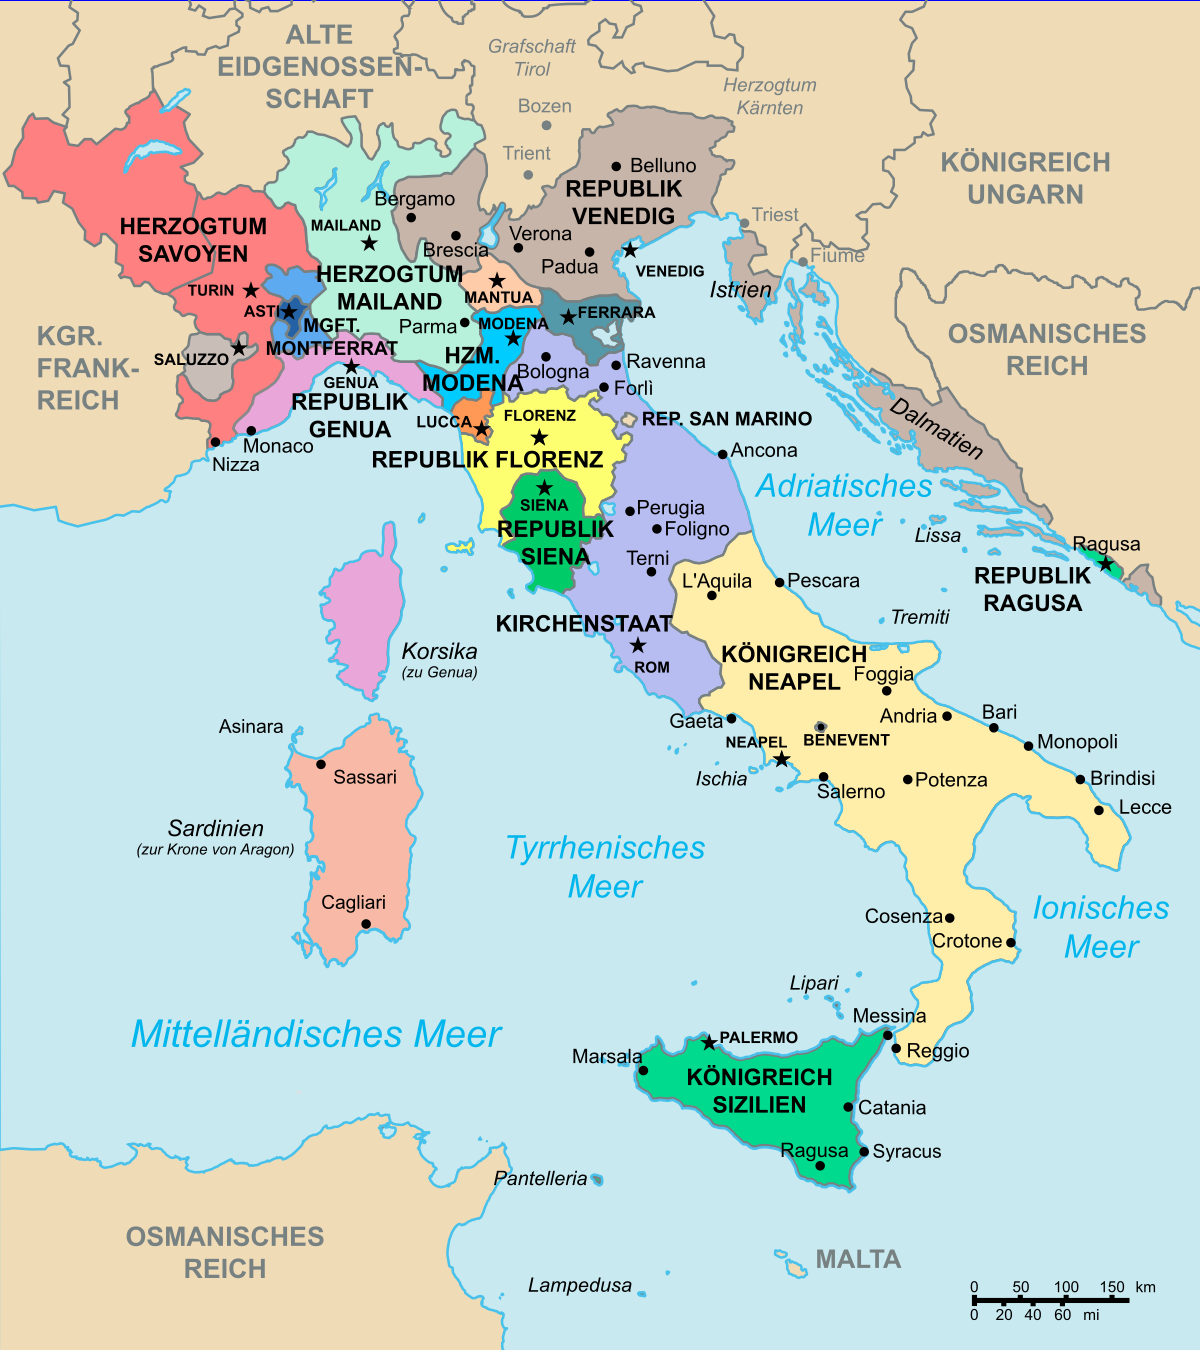 frankreich italien karte Italienische Kriege Wikipedia frankreich italien karte